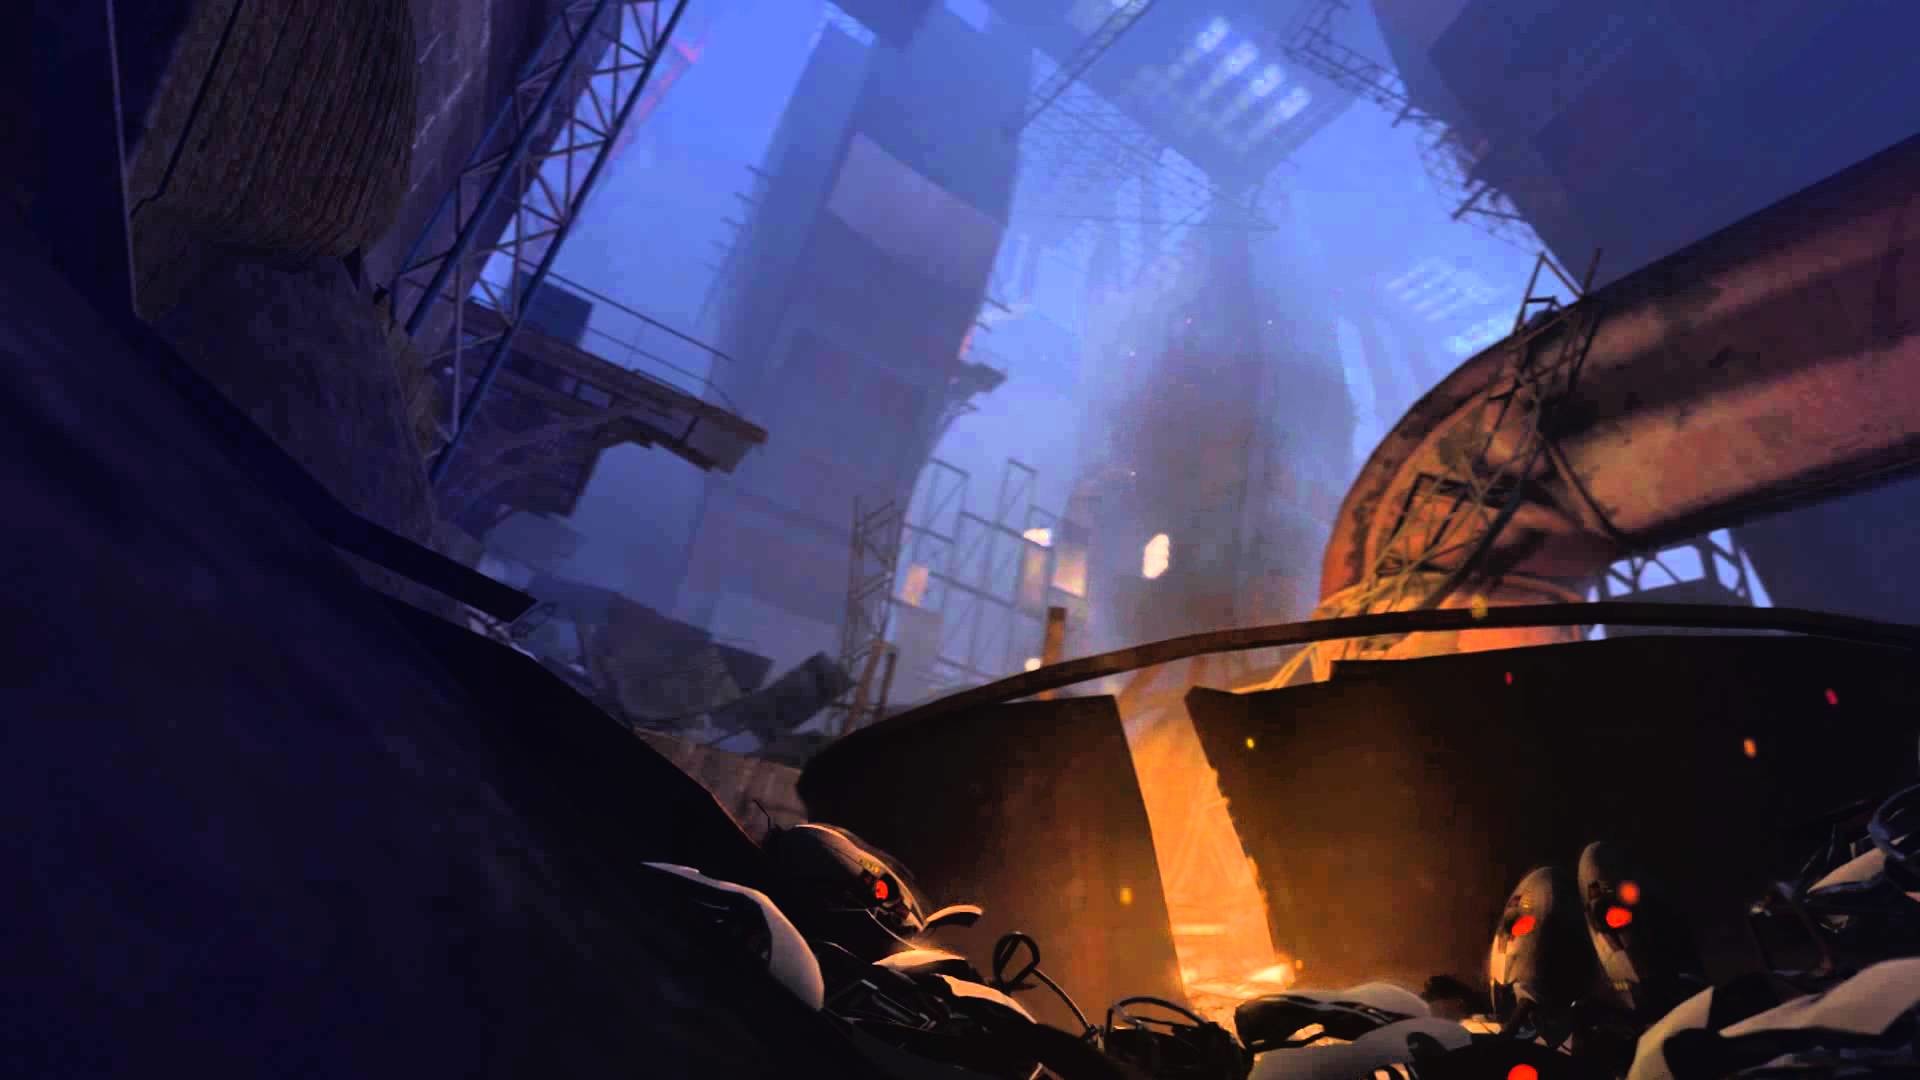 Khám phá thế giới khoa học viễn tưởng của Portal 2 với hình nền tuyệt vời này! Hình ảnh sẽ đưa bạn đến một thế giới của siêu vũ trụ và đầy sáng tạo. Chắc chắn sẽ là một trải nghiệm tuyệt vời khi bạn sử dụng hình nền này cho thiết bị của mình.